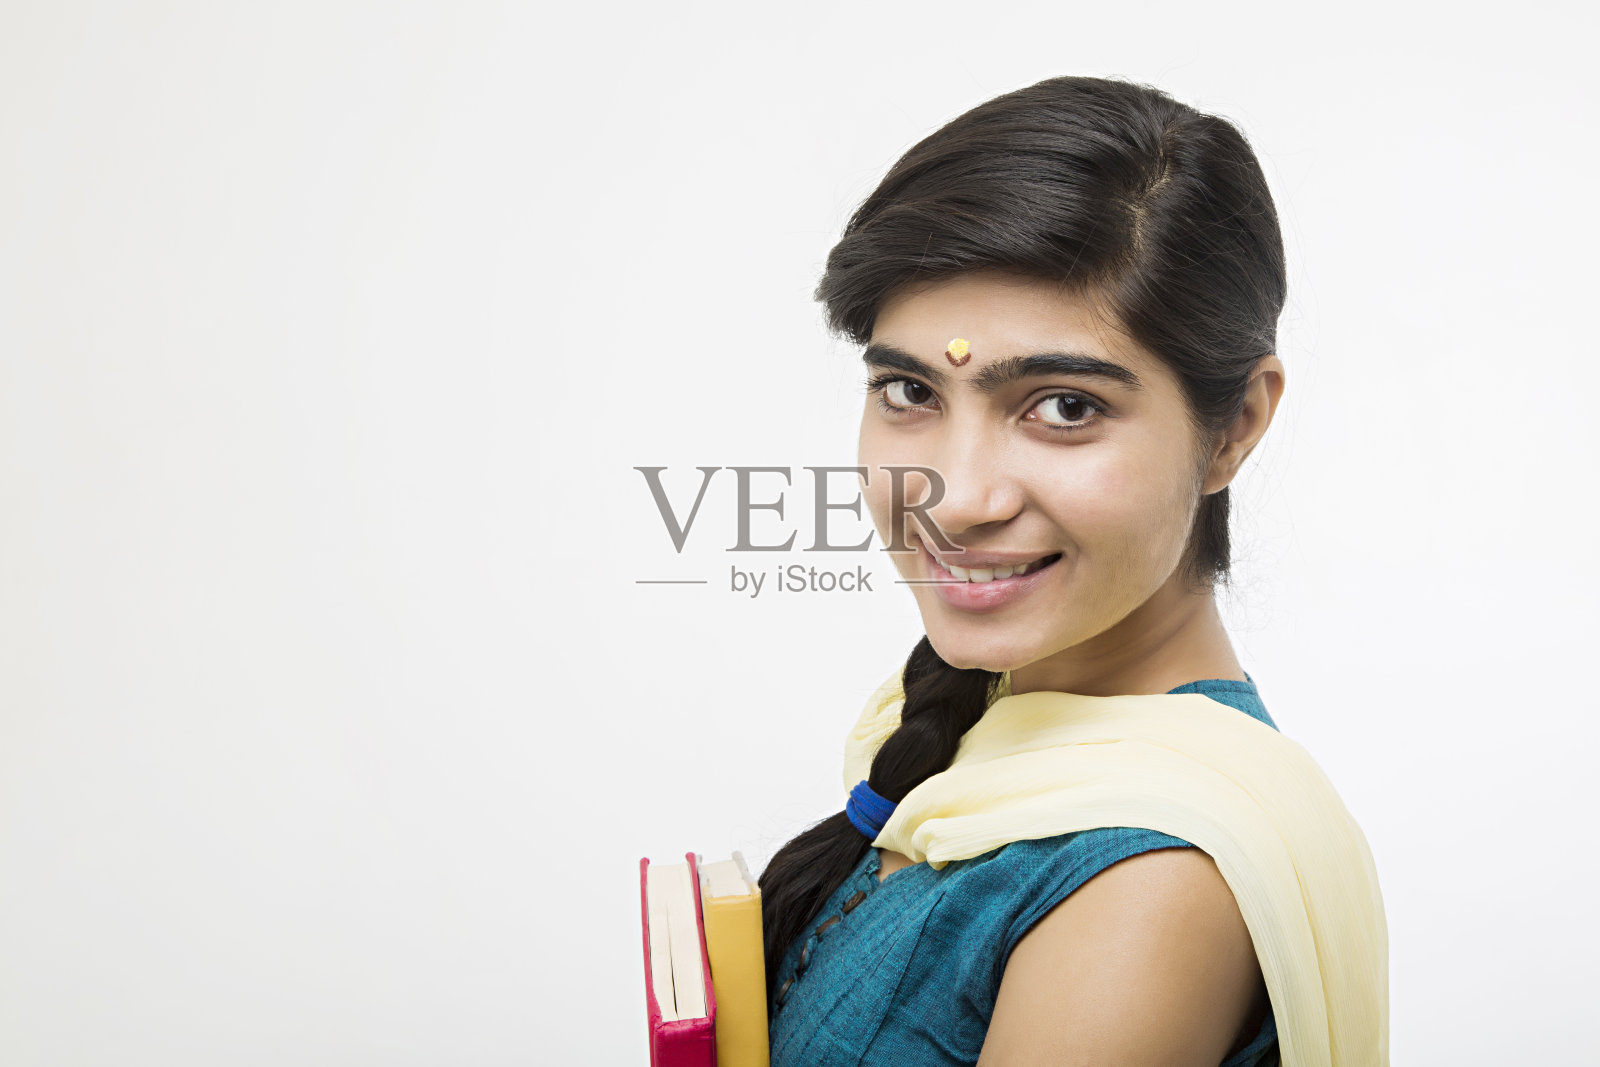 年轻的成年南印度妇女在白色背景-股票图像照片摄影图片